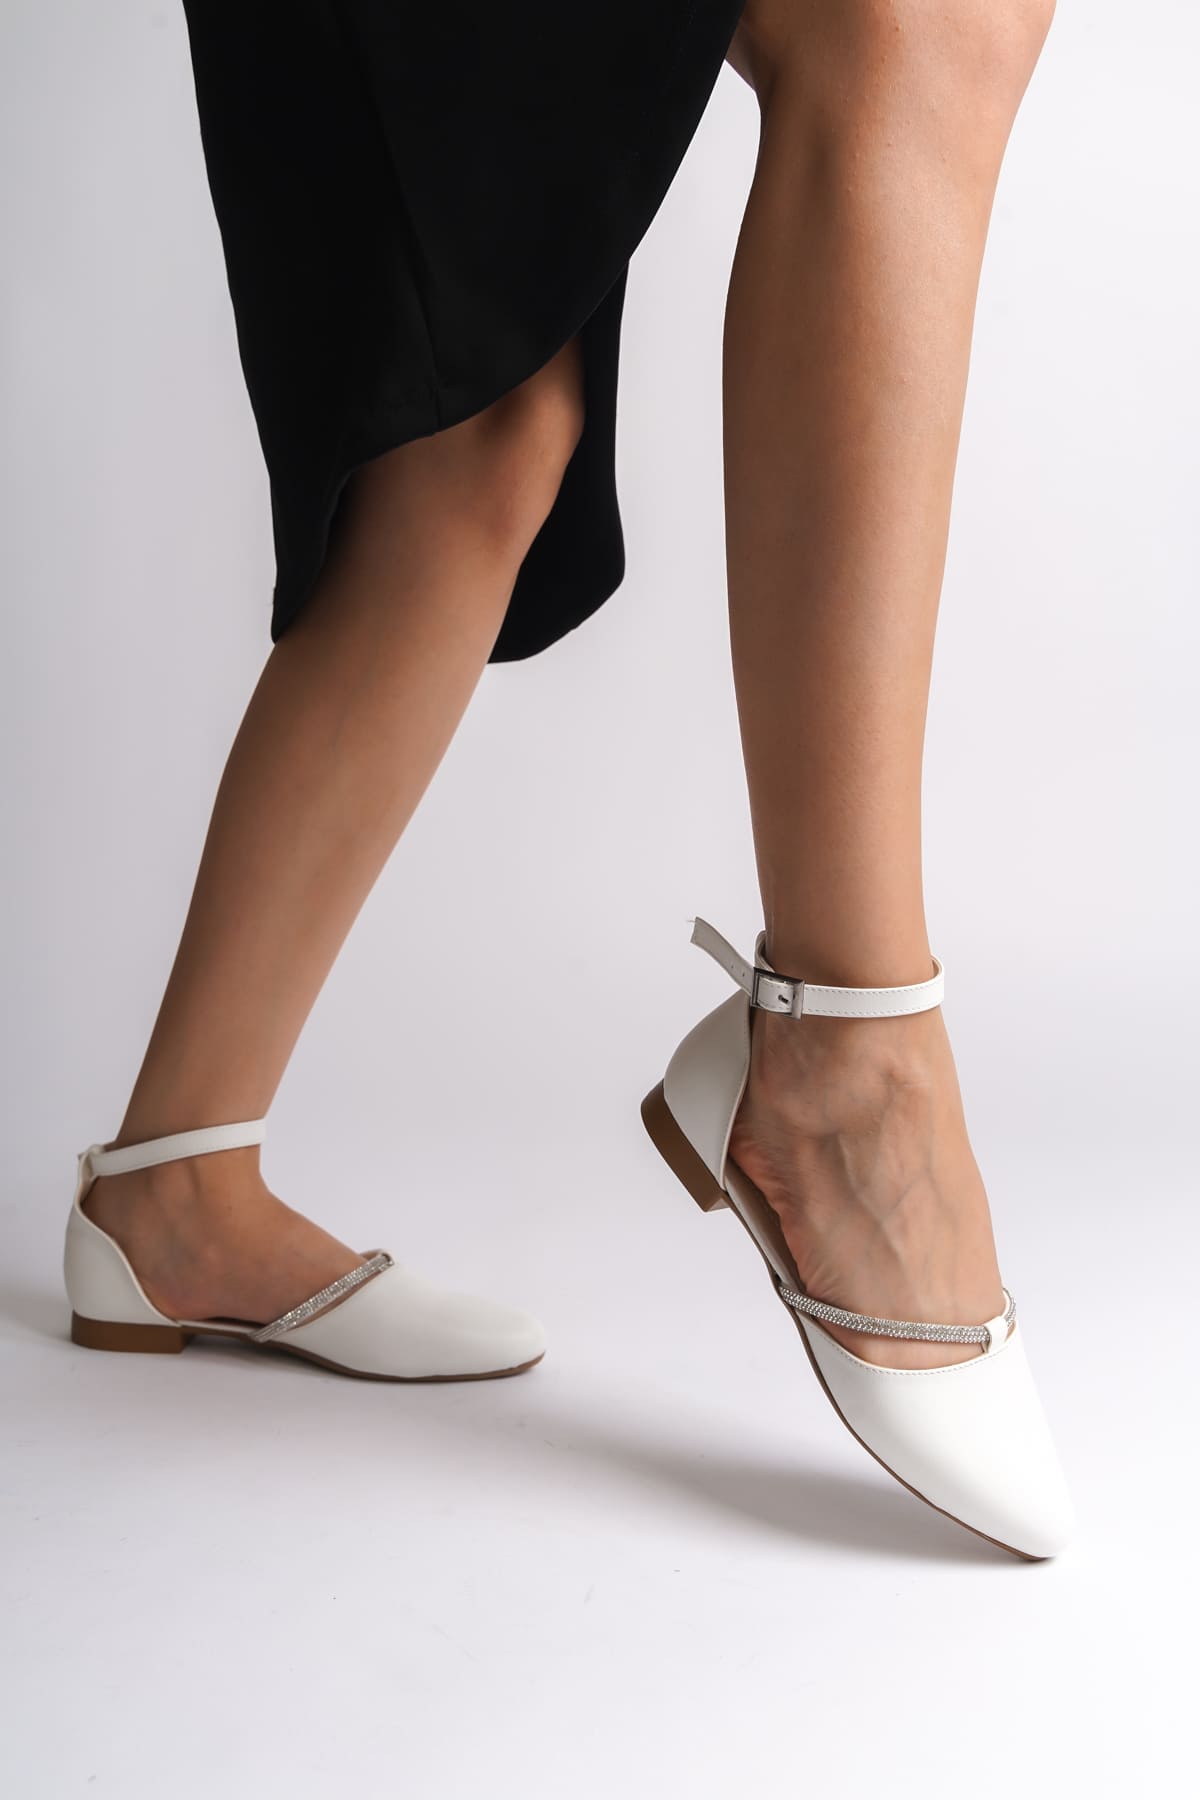 CLZ948  Tokalı Ortopedik Rahat Taban Taş Detaylı Kadın Babet Ayakkabı KT Beyaz